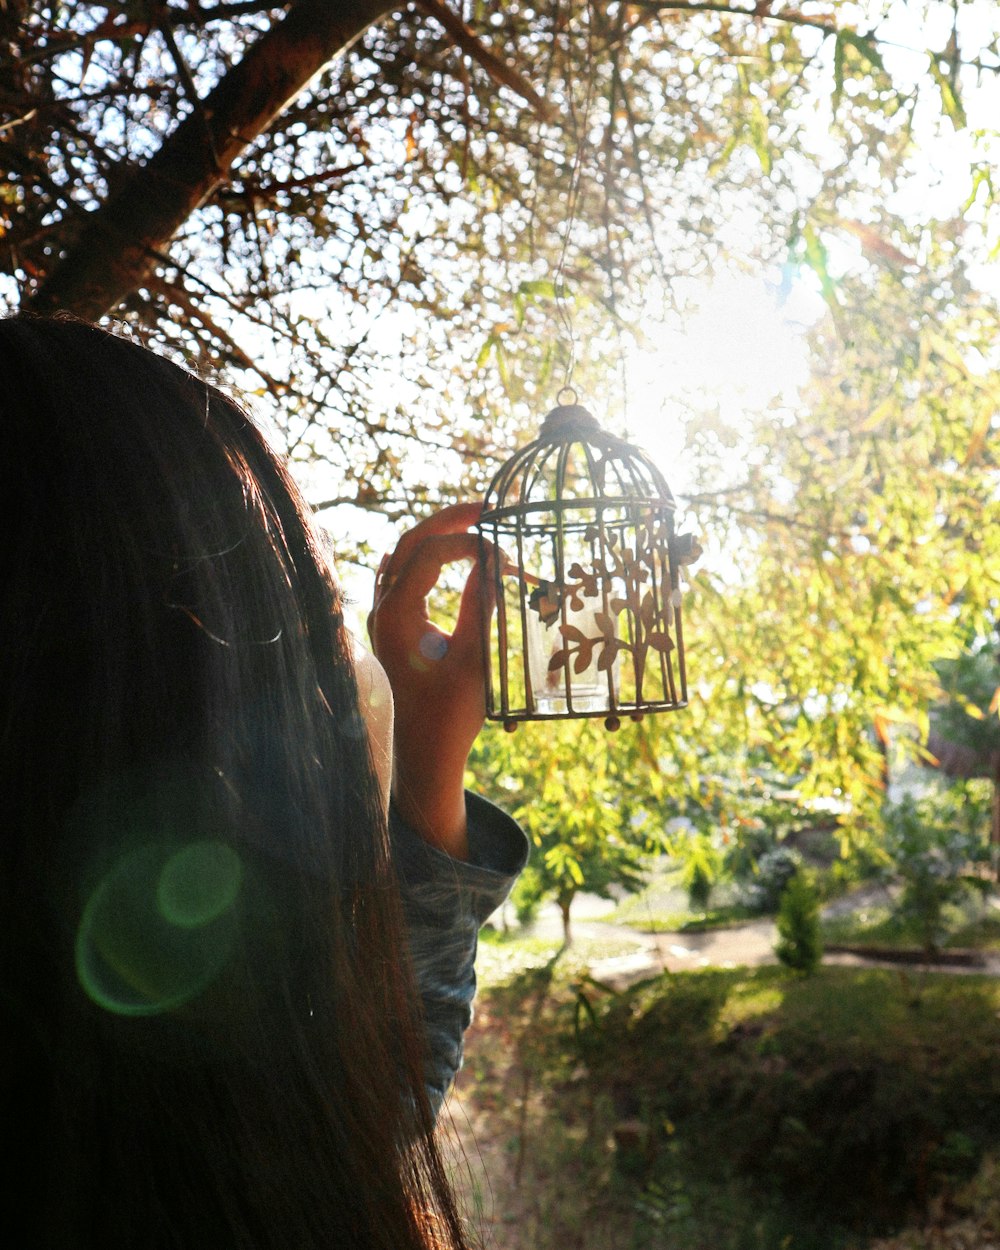 a person holding a bird feeder